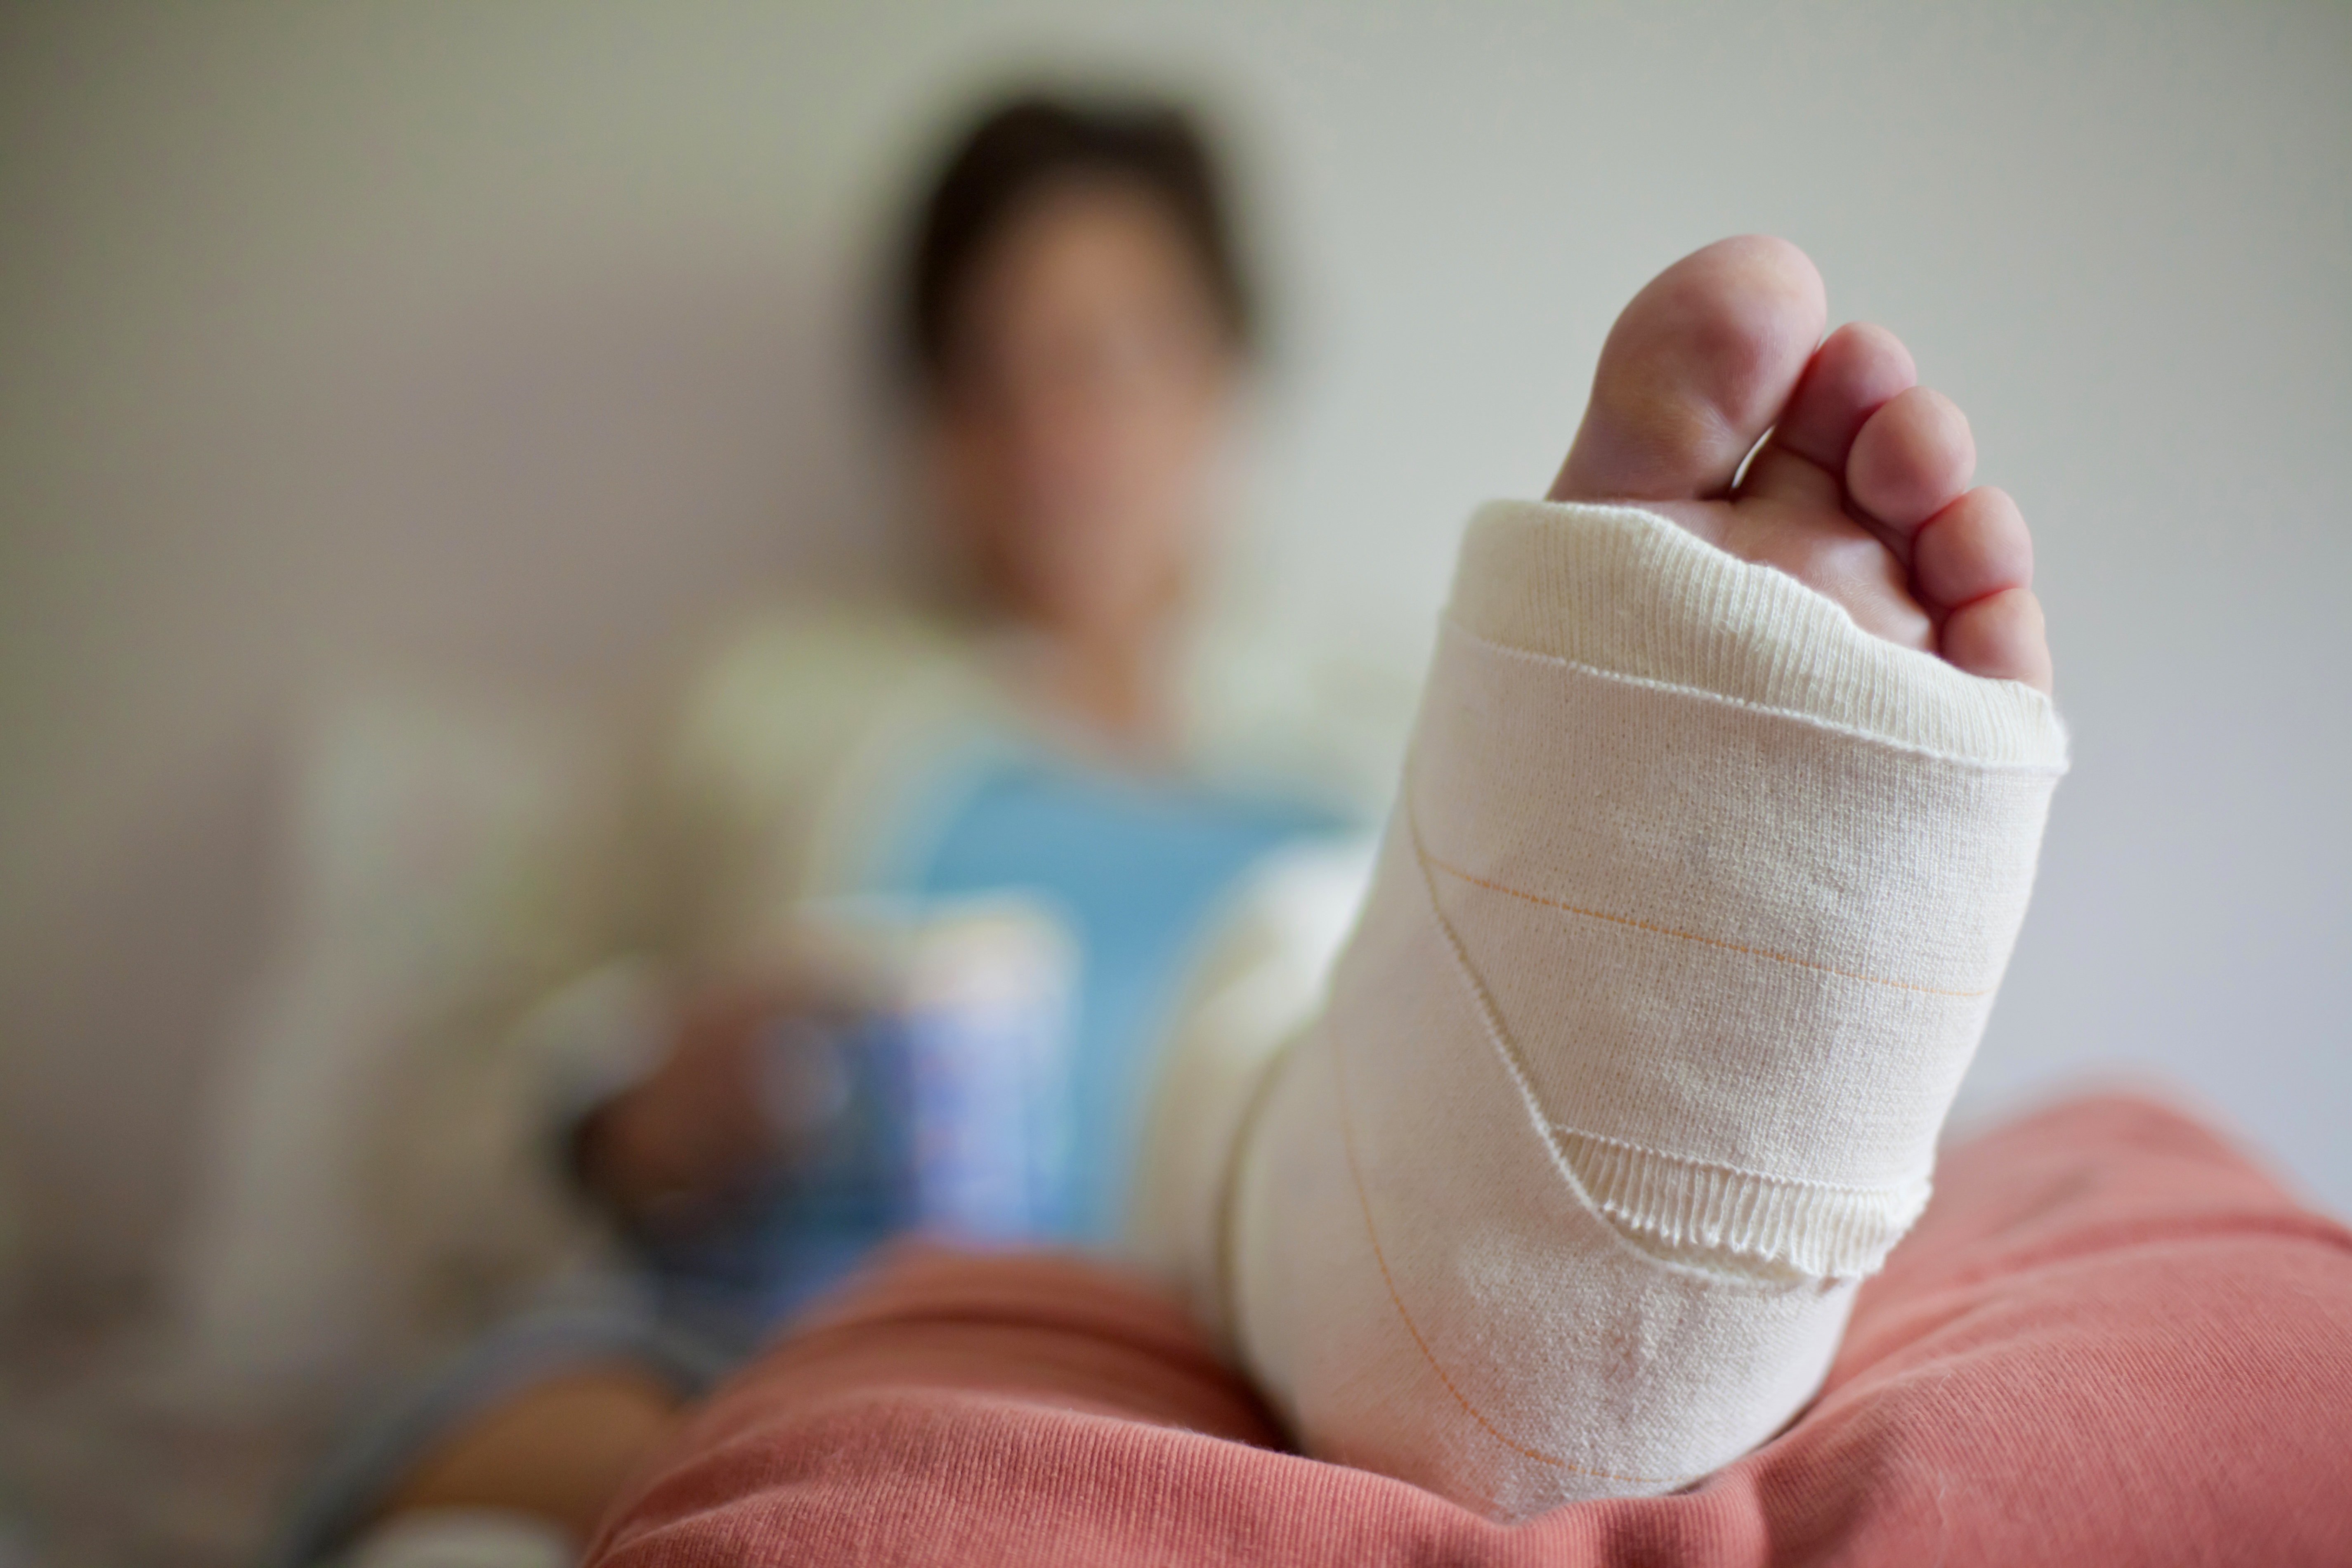 Frau mit gebrochenem Bein auf einem Bett liegend | Quelle: Getty Images